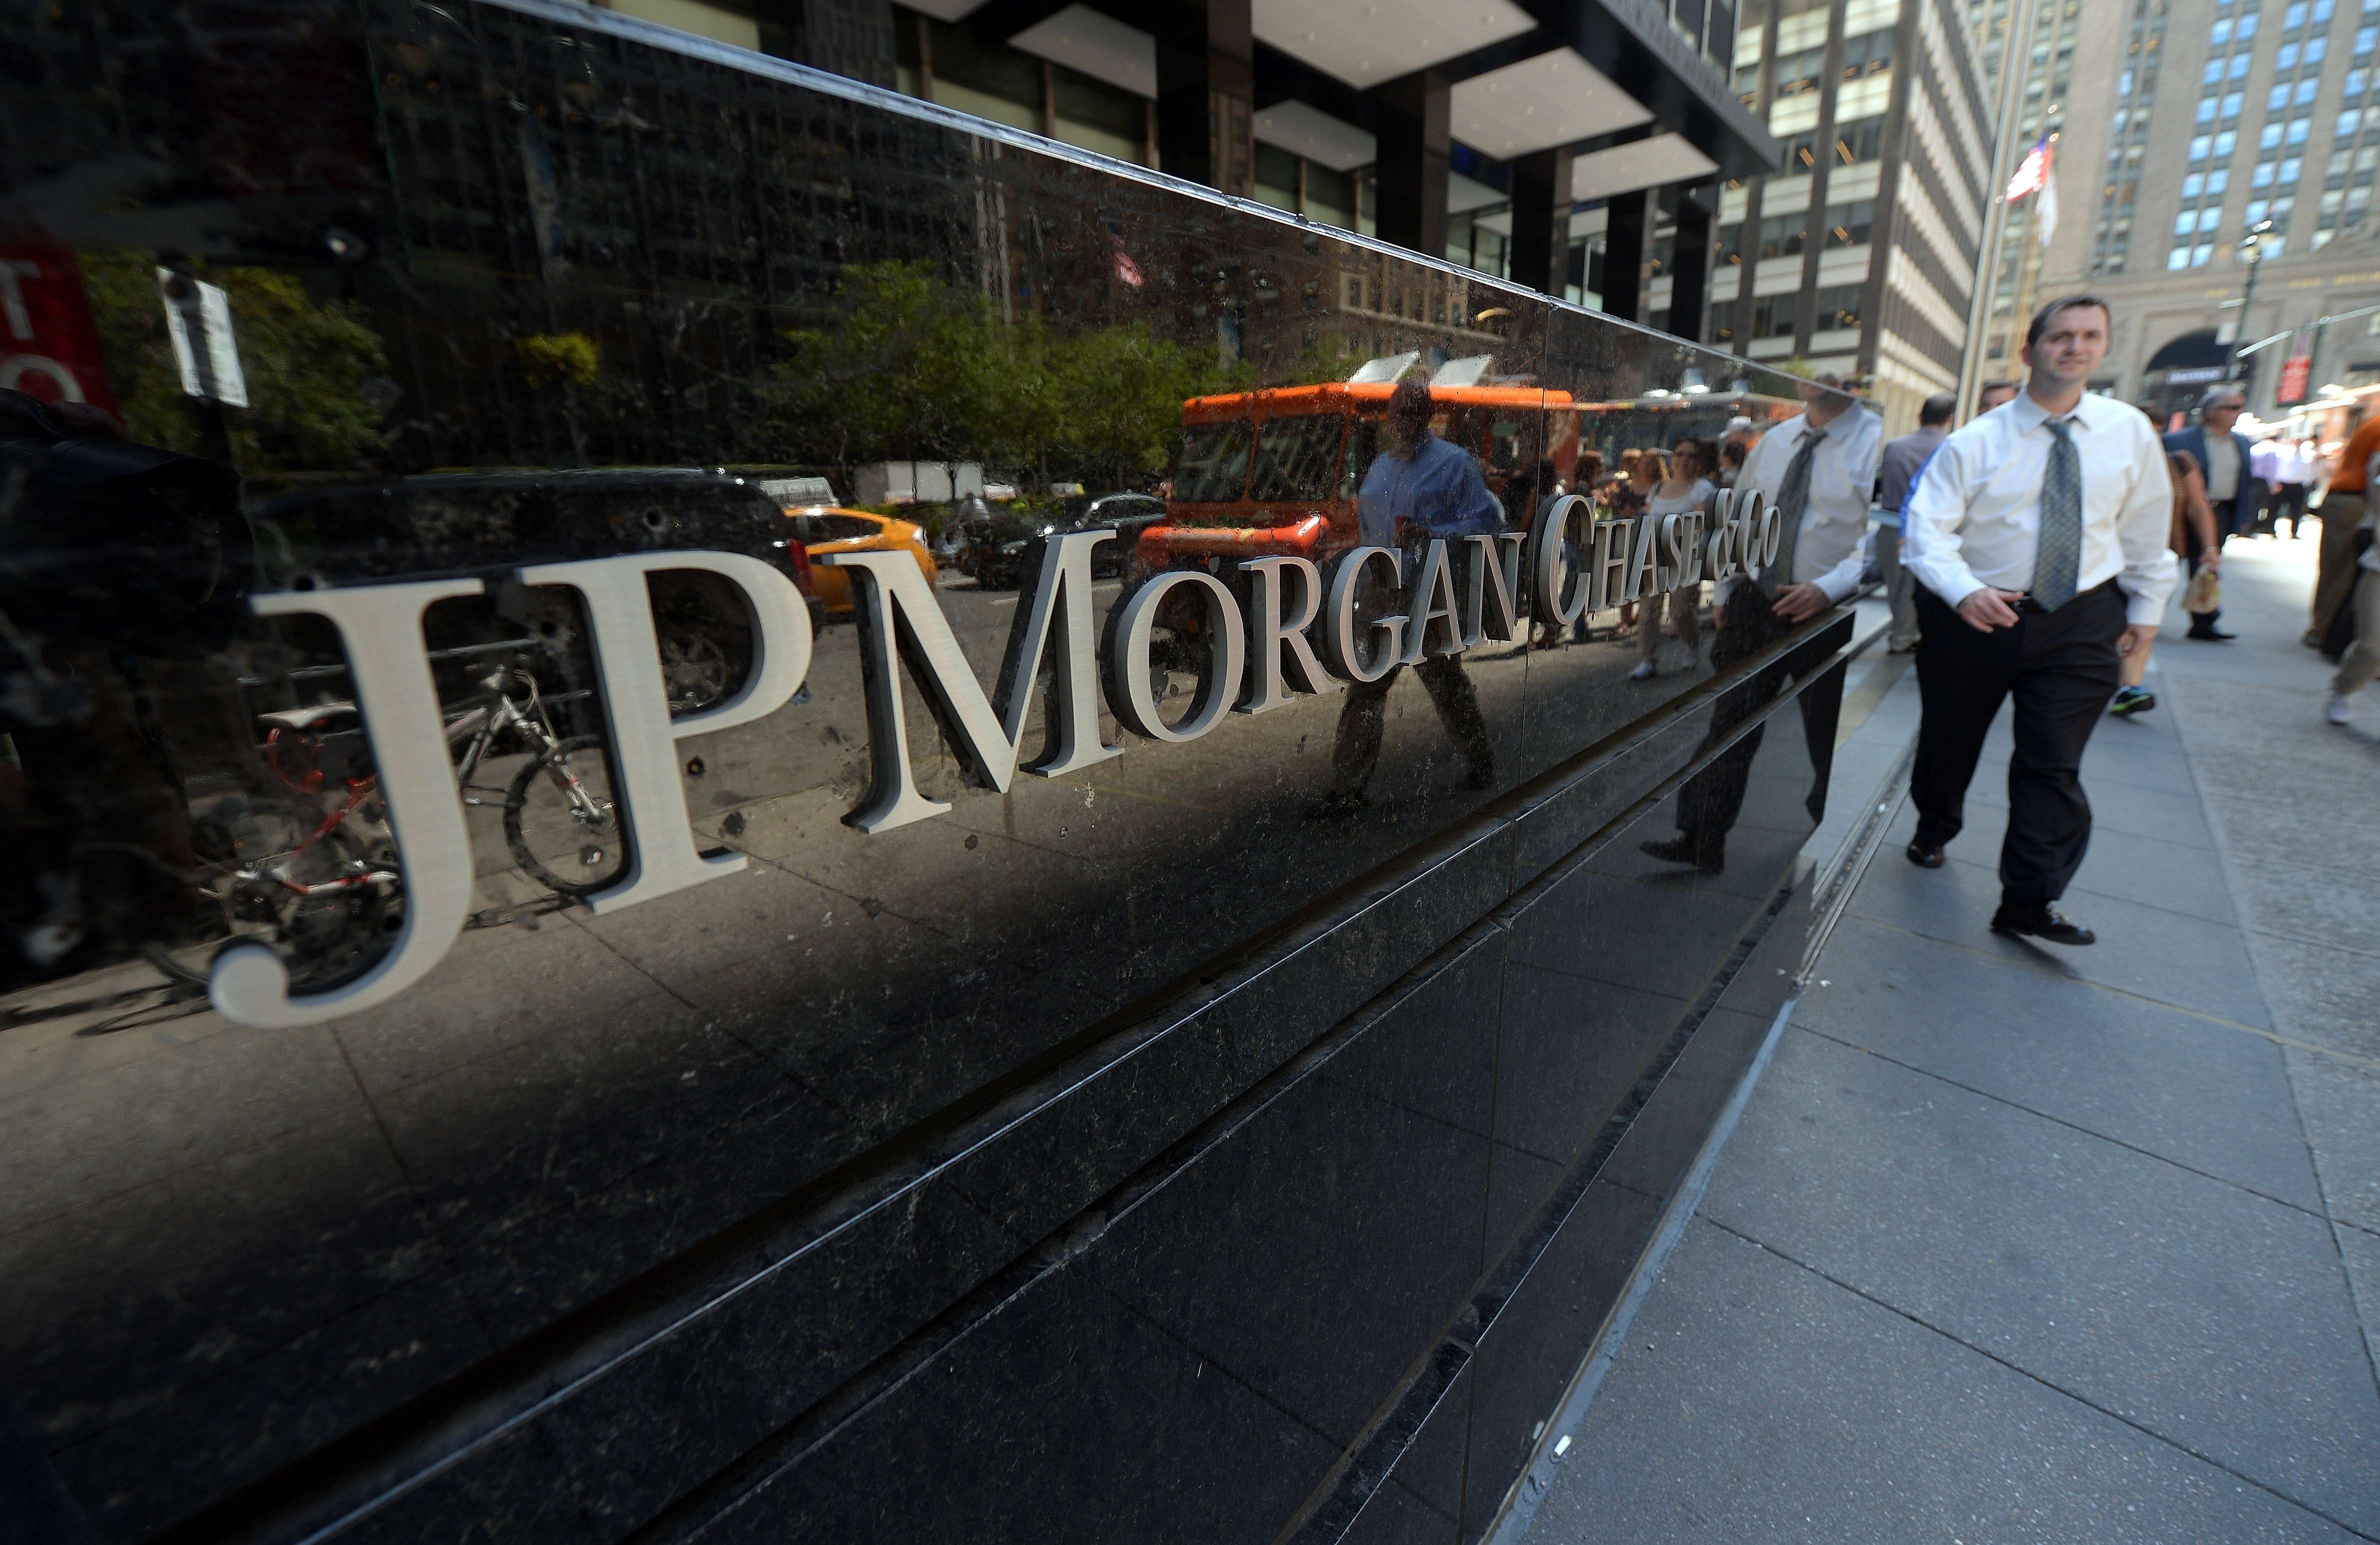 El pasado 1° de mayo, JPMorgan adquirió los activos de First Republic Bank tras su intervención y cierre “para proteger a los depositantes”, incluyendo las 84 oficinas del banco regional. Fotografía de archivo: